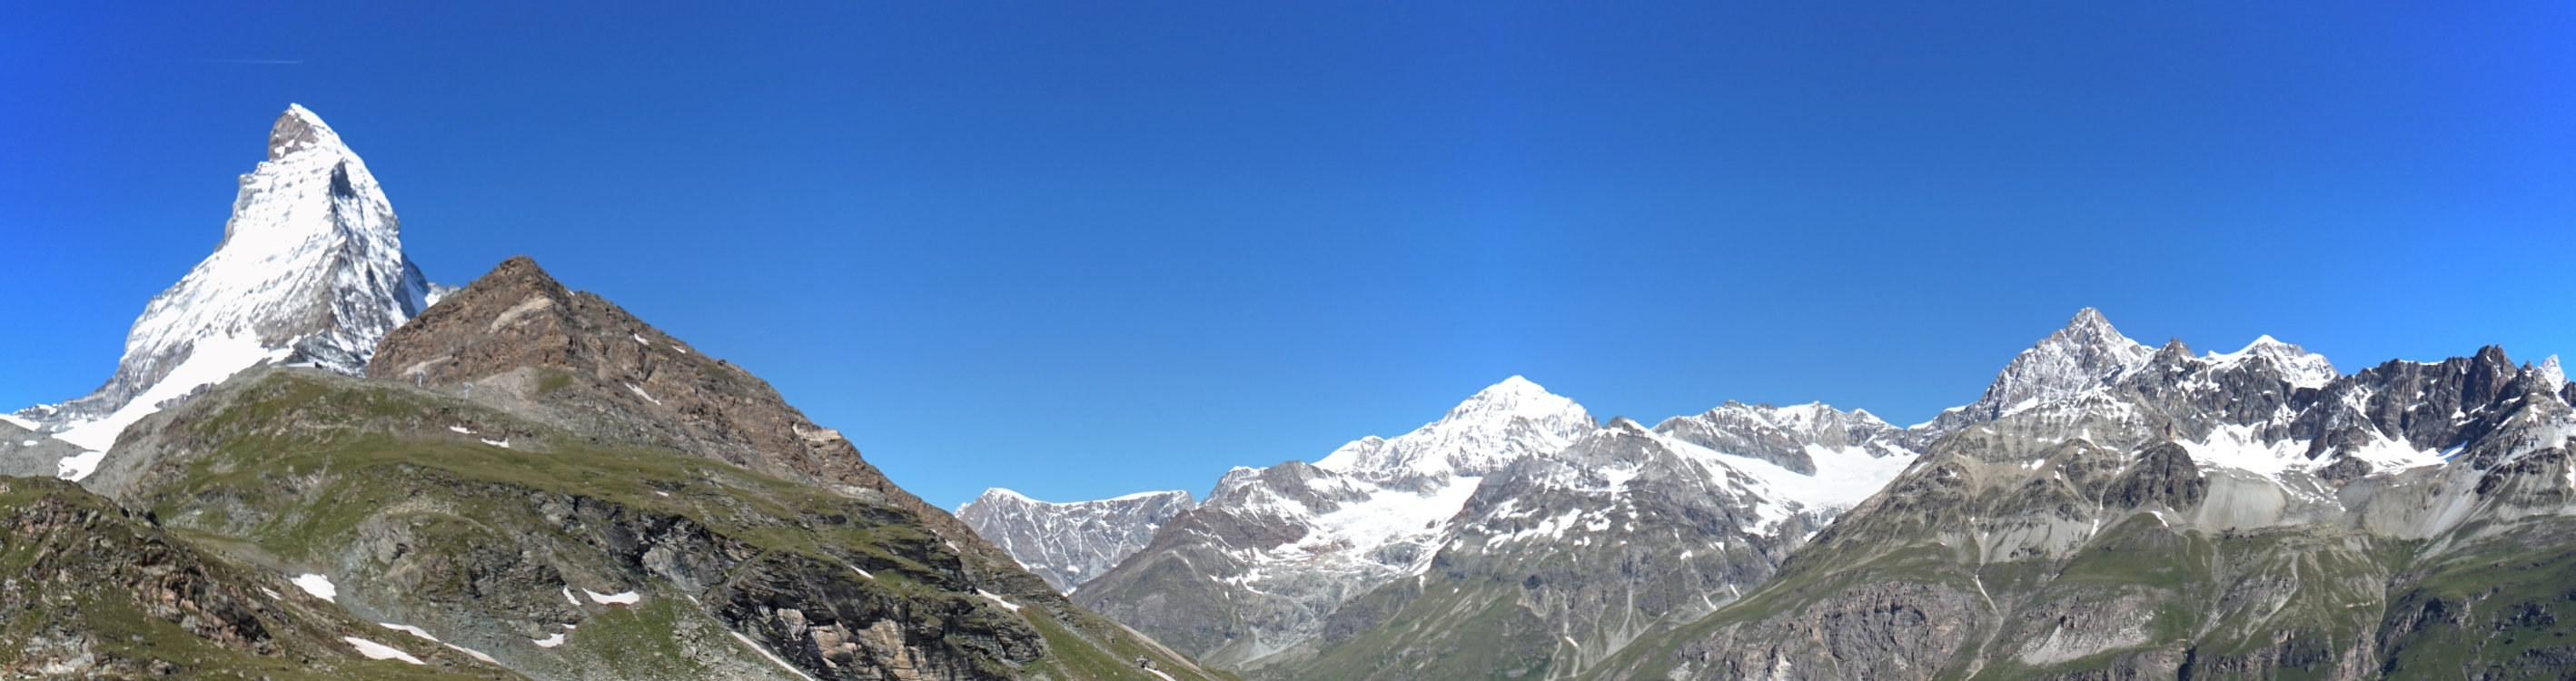 Die Berge der Walliser Alpen rund um das Matterhorn.